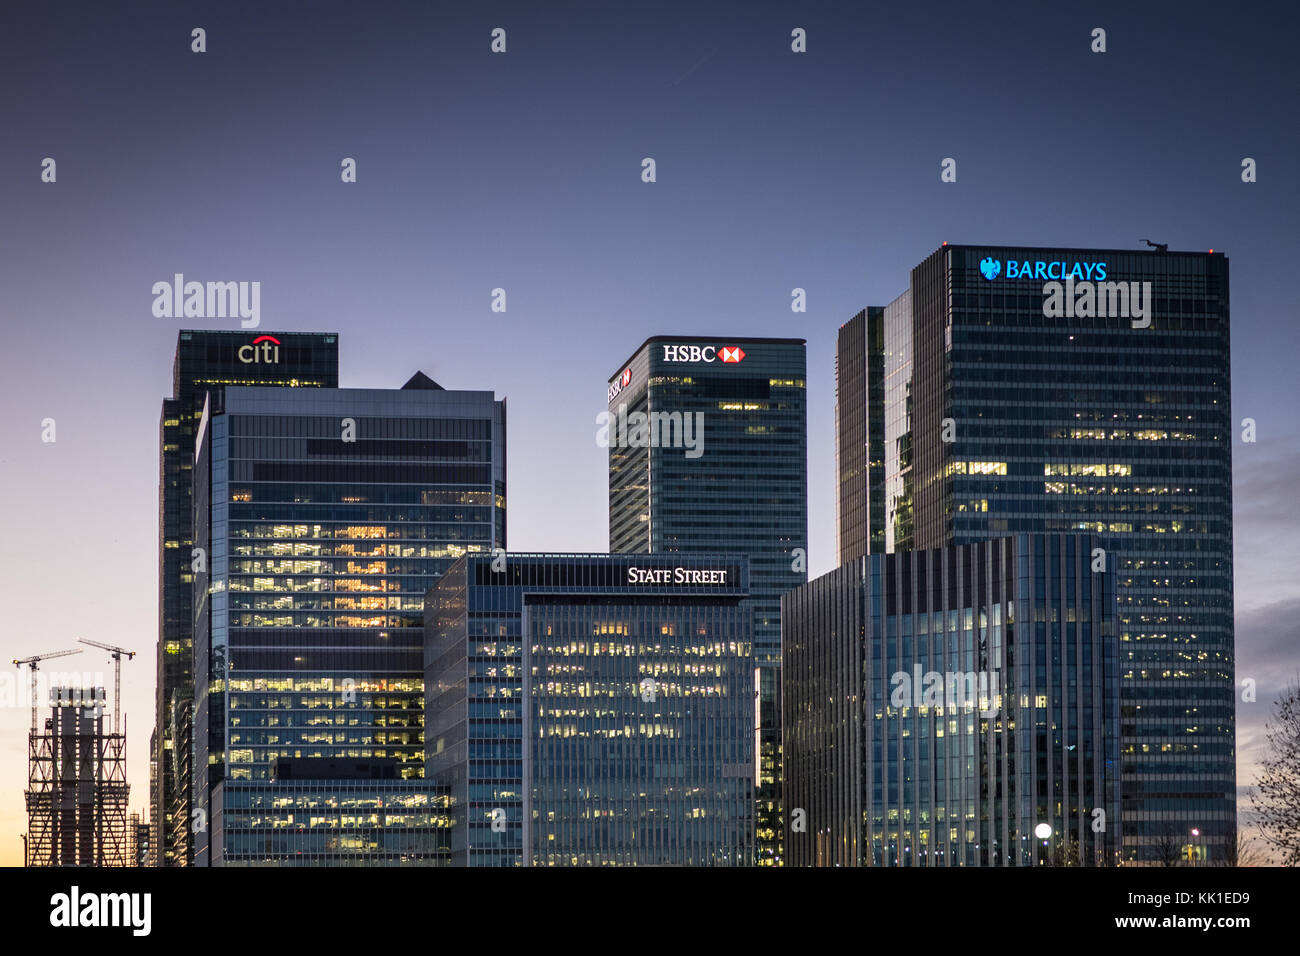 Die Banken in London, Canary Wharf in der Dämmerung - Barclays, HSBC, State Street, CitiBank Stockfoto